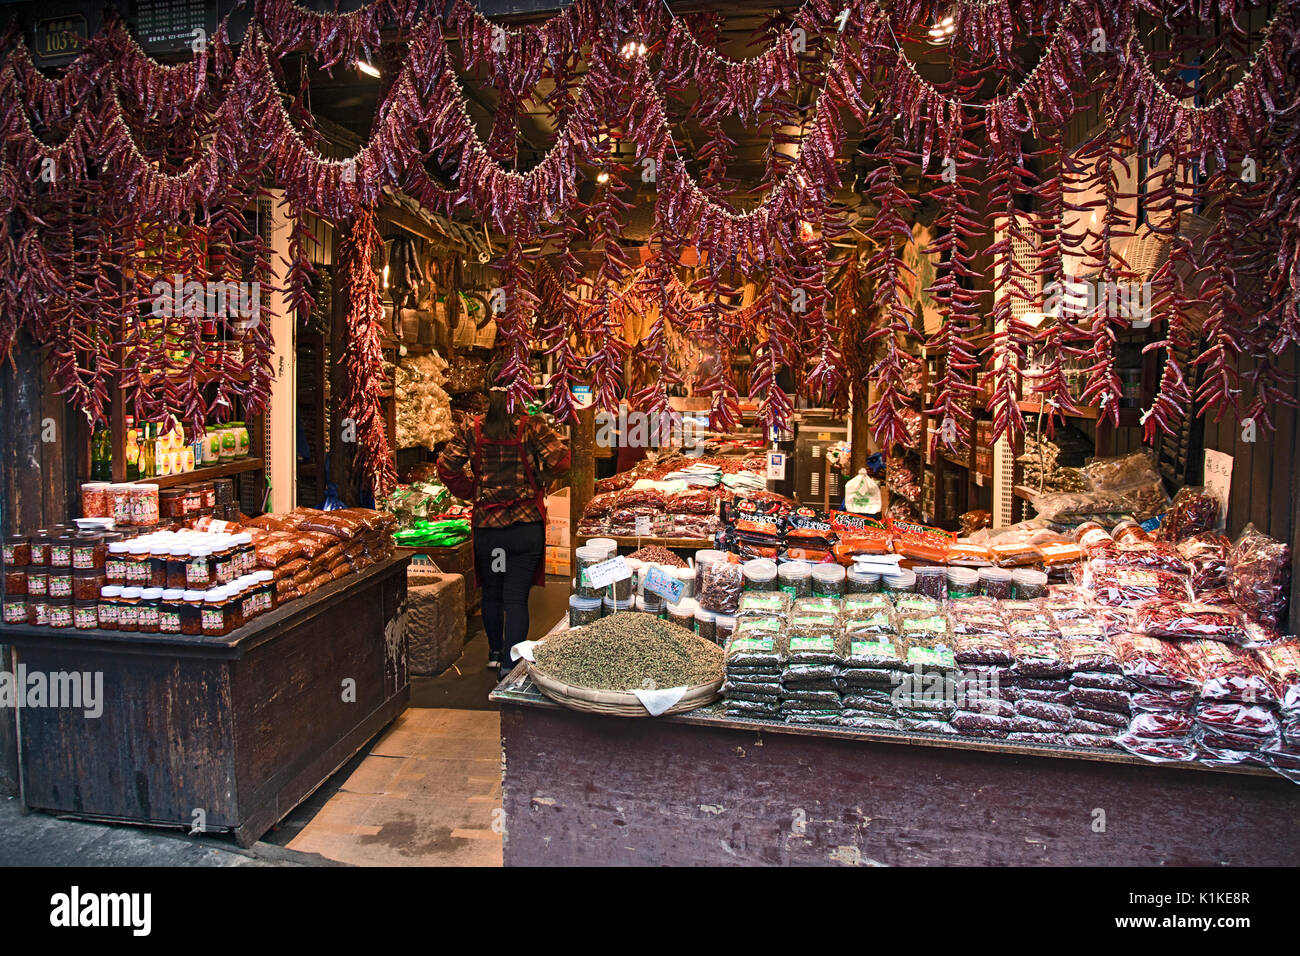 Boucles de poivrons rouges décorent l'entrée d'une boutique d'épices et de produits alimentaires dans la rue principale de la vieille ville de Ciqikou, Chongqing, Chine. Banque D'Images